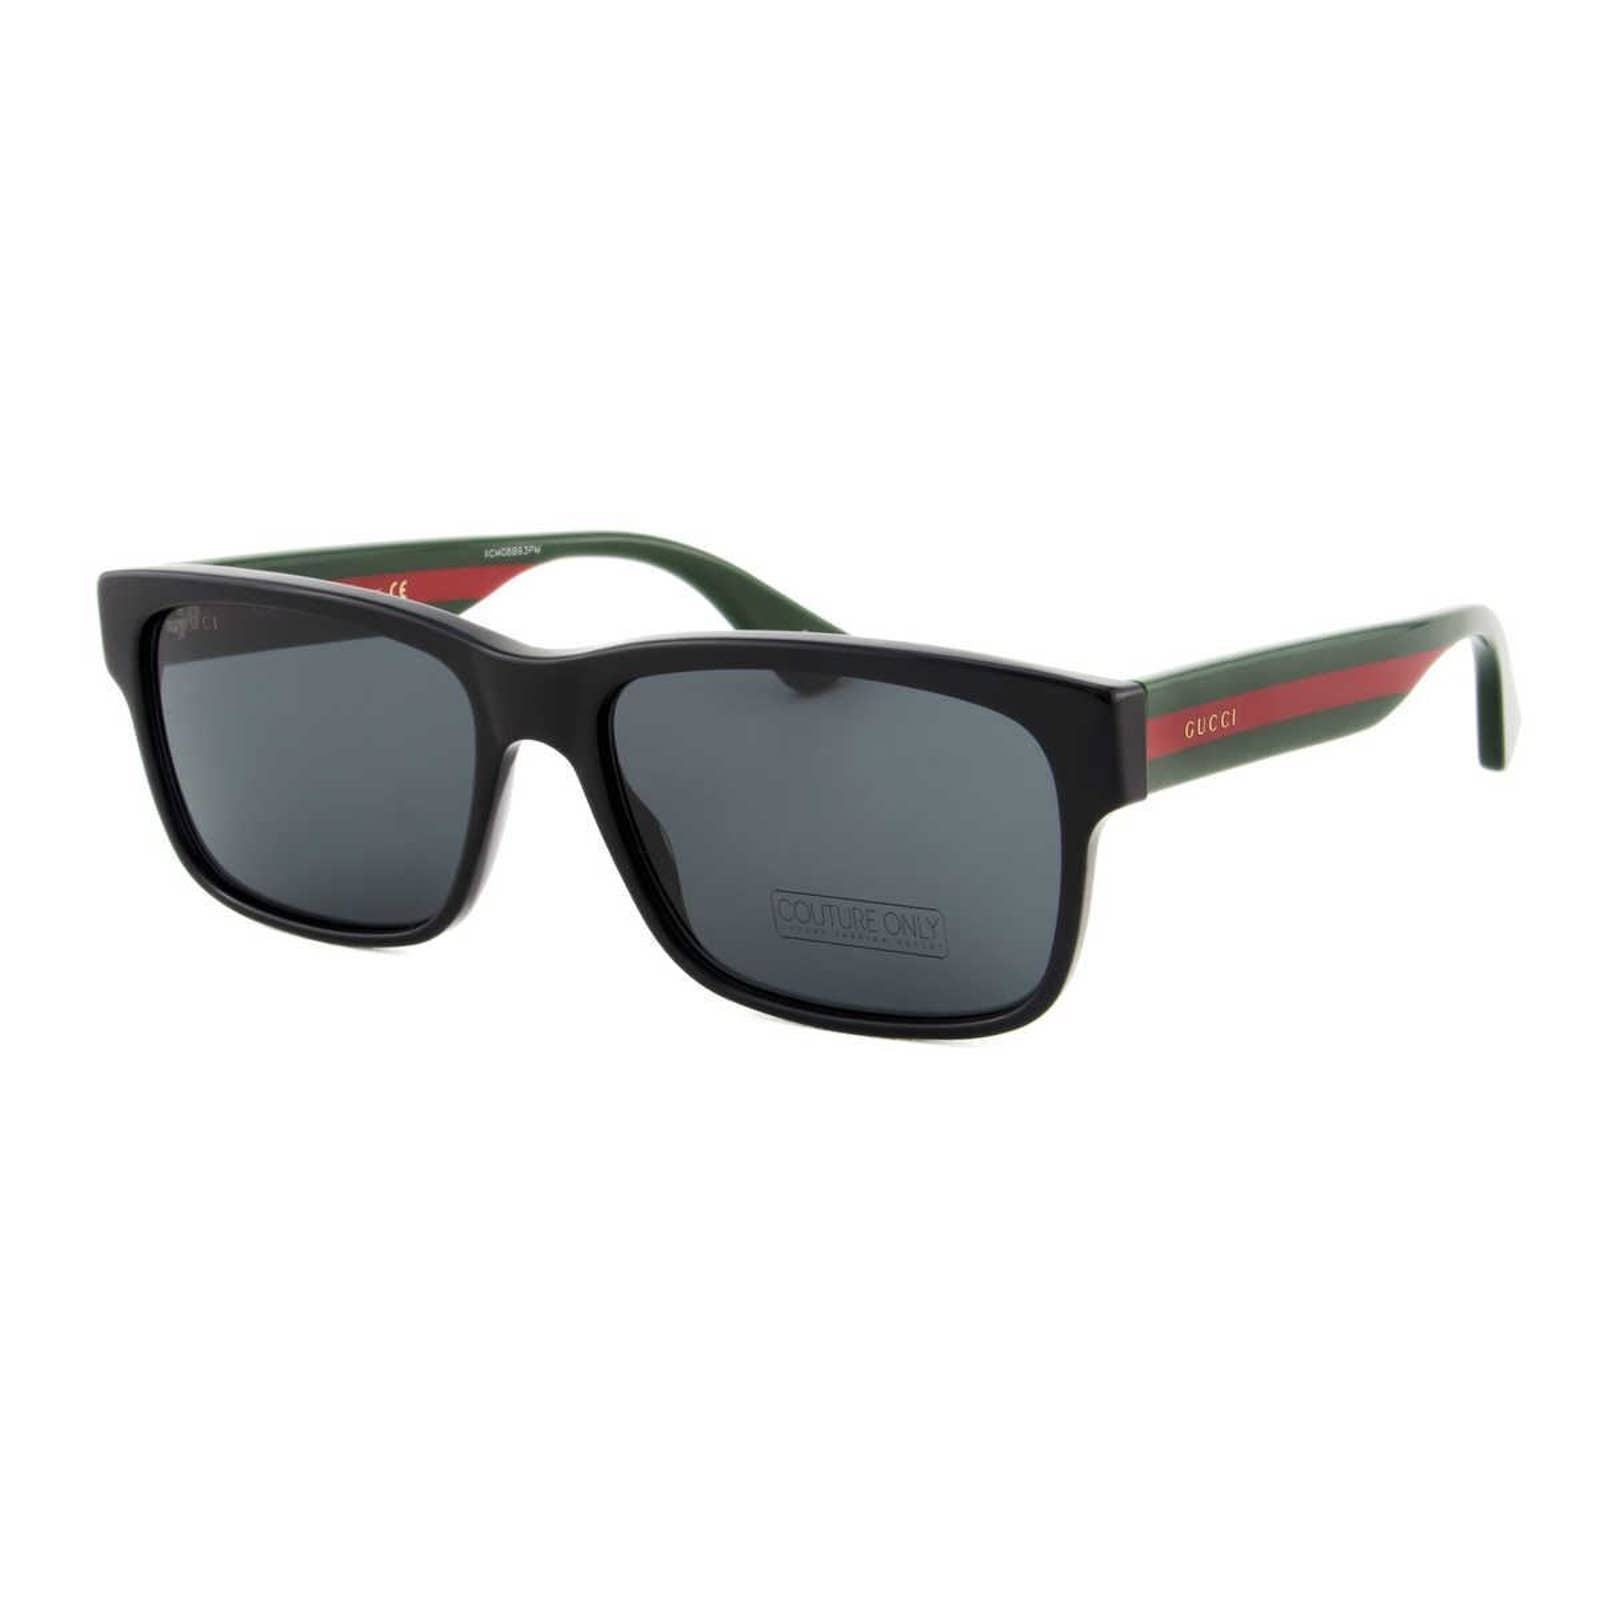 Men Square Black Sunglasses GG0340S-006 Gray Lens